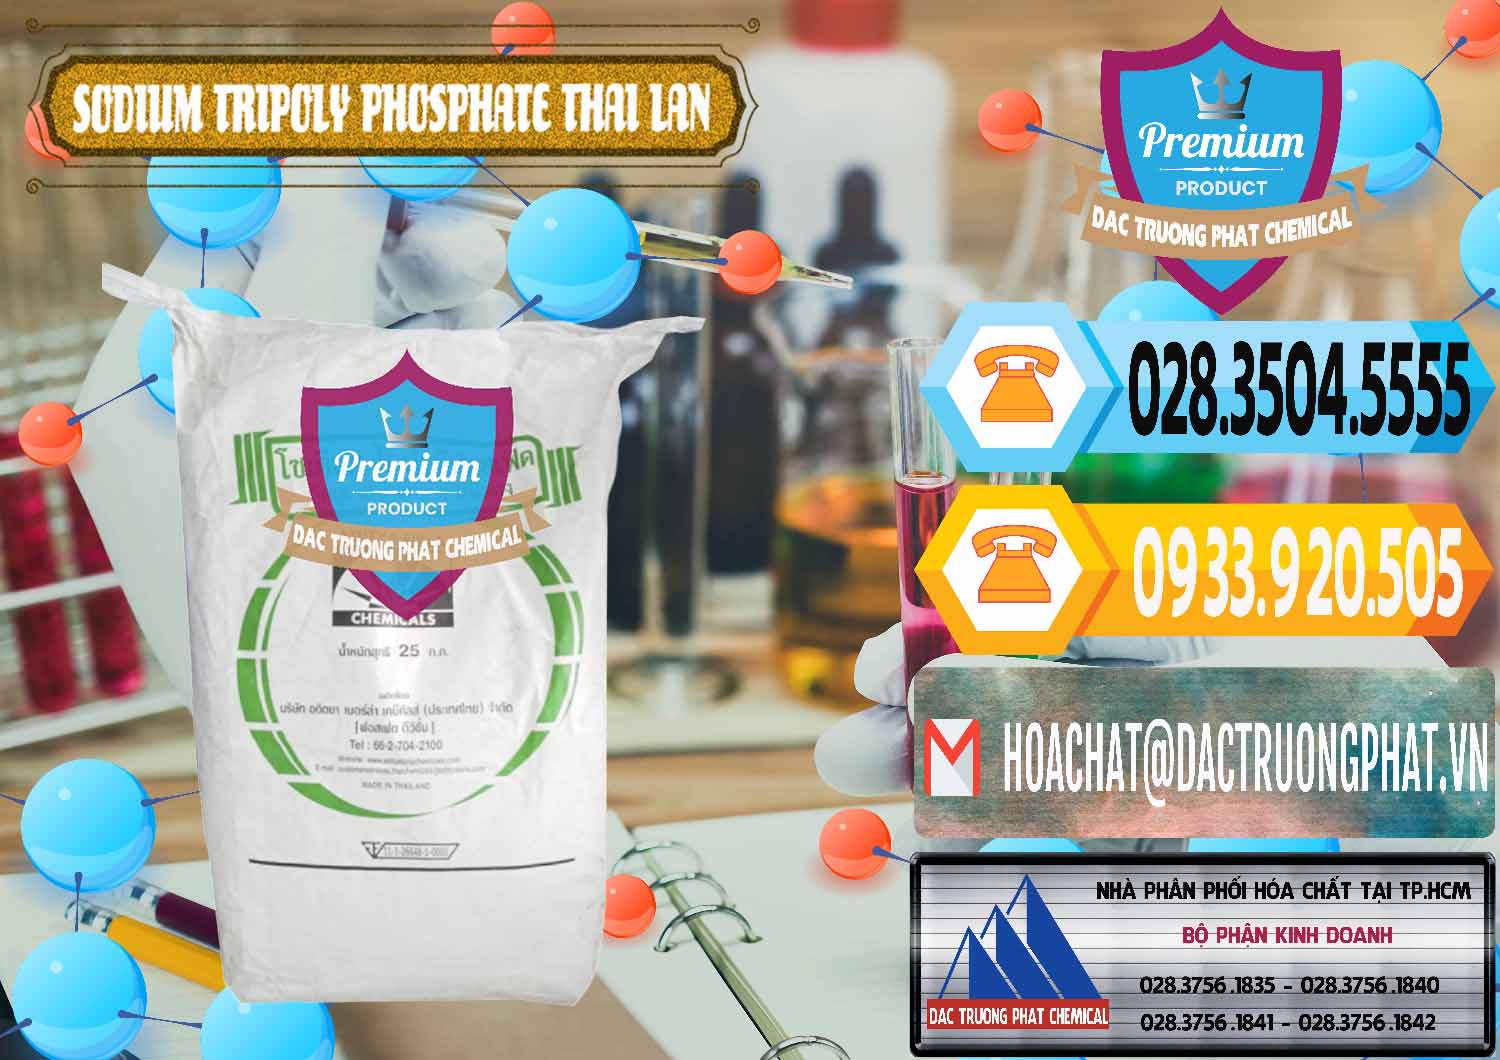 Đơn vị chuyên bán _ cung ứng Sodium Tripoly Phosphate - STPP Aditya Birla Grasim Thái Lan Thailand - 0421 - Nhà phân phối & nhập khẩu hóa chất tại TP.HCM - hoachattayrua.net